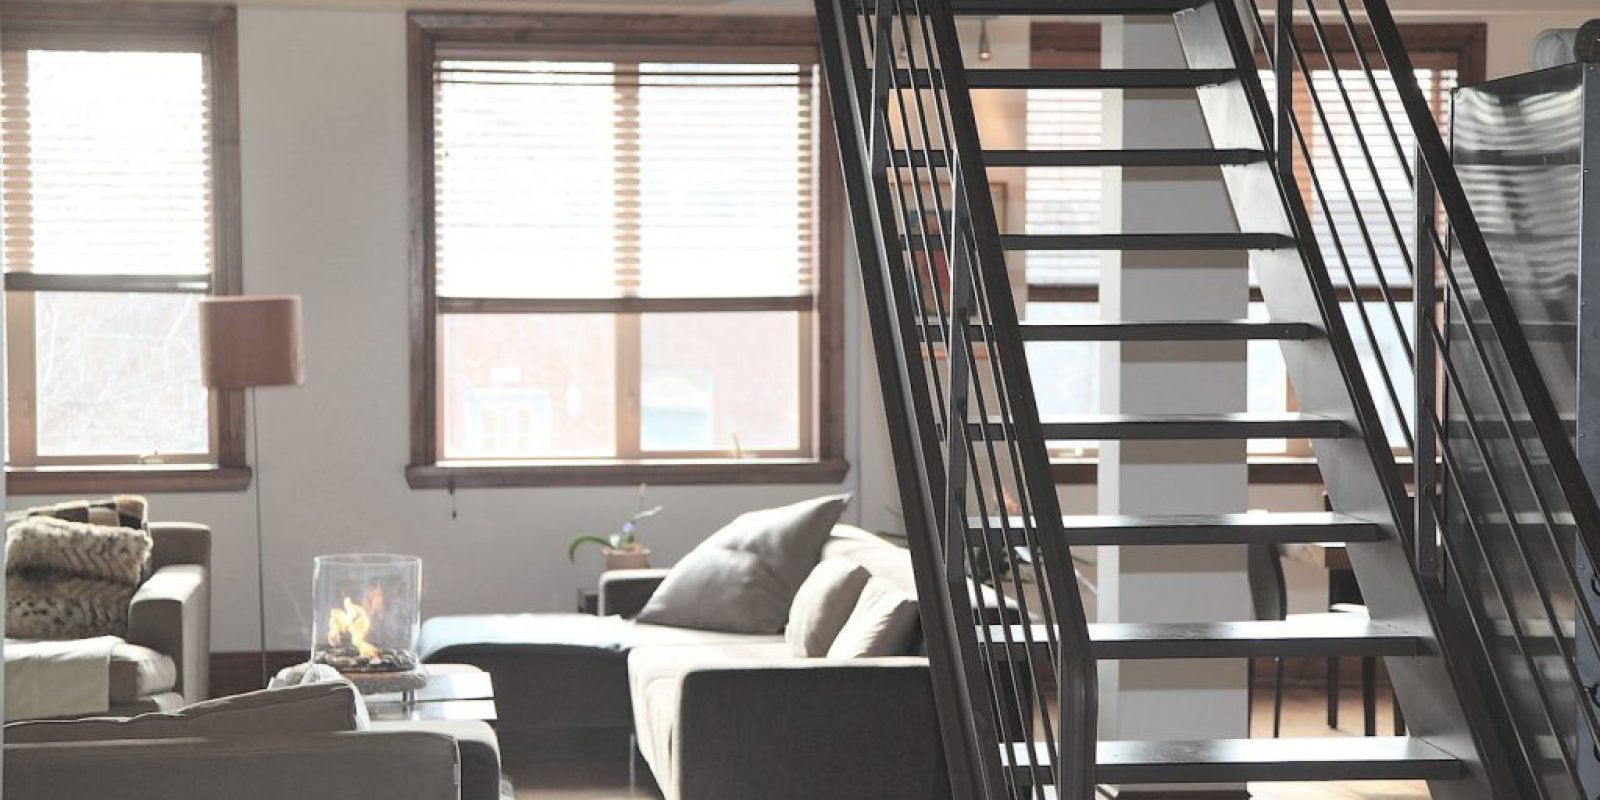 Barierki na schody - przewodnik dla tworzenia pięknych i bezpiecznych przestrzeni